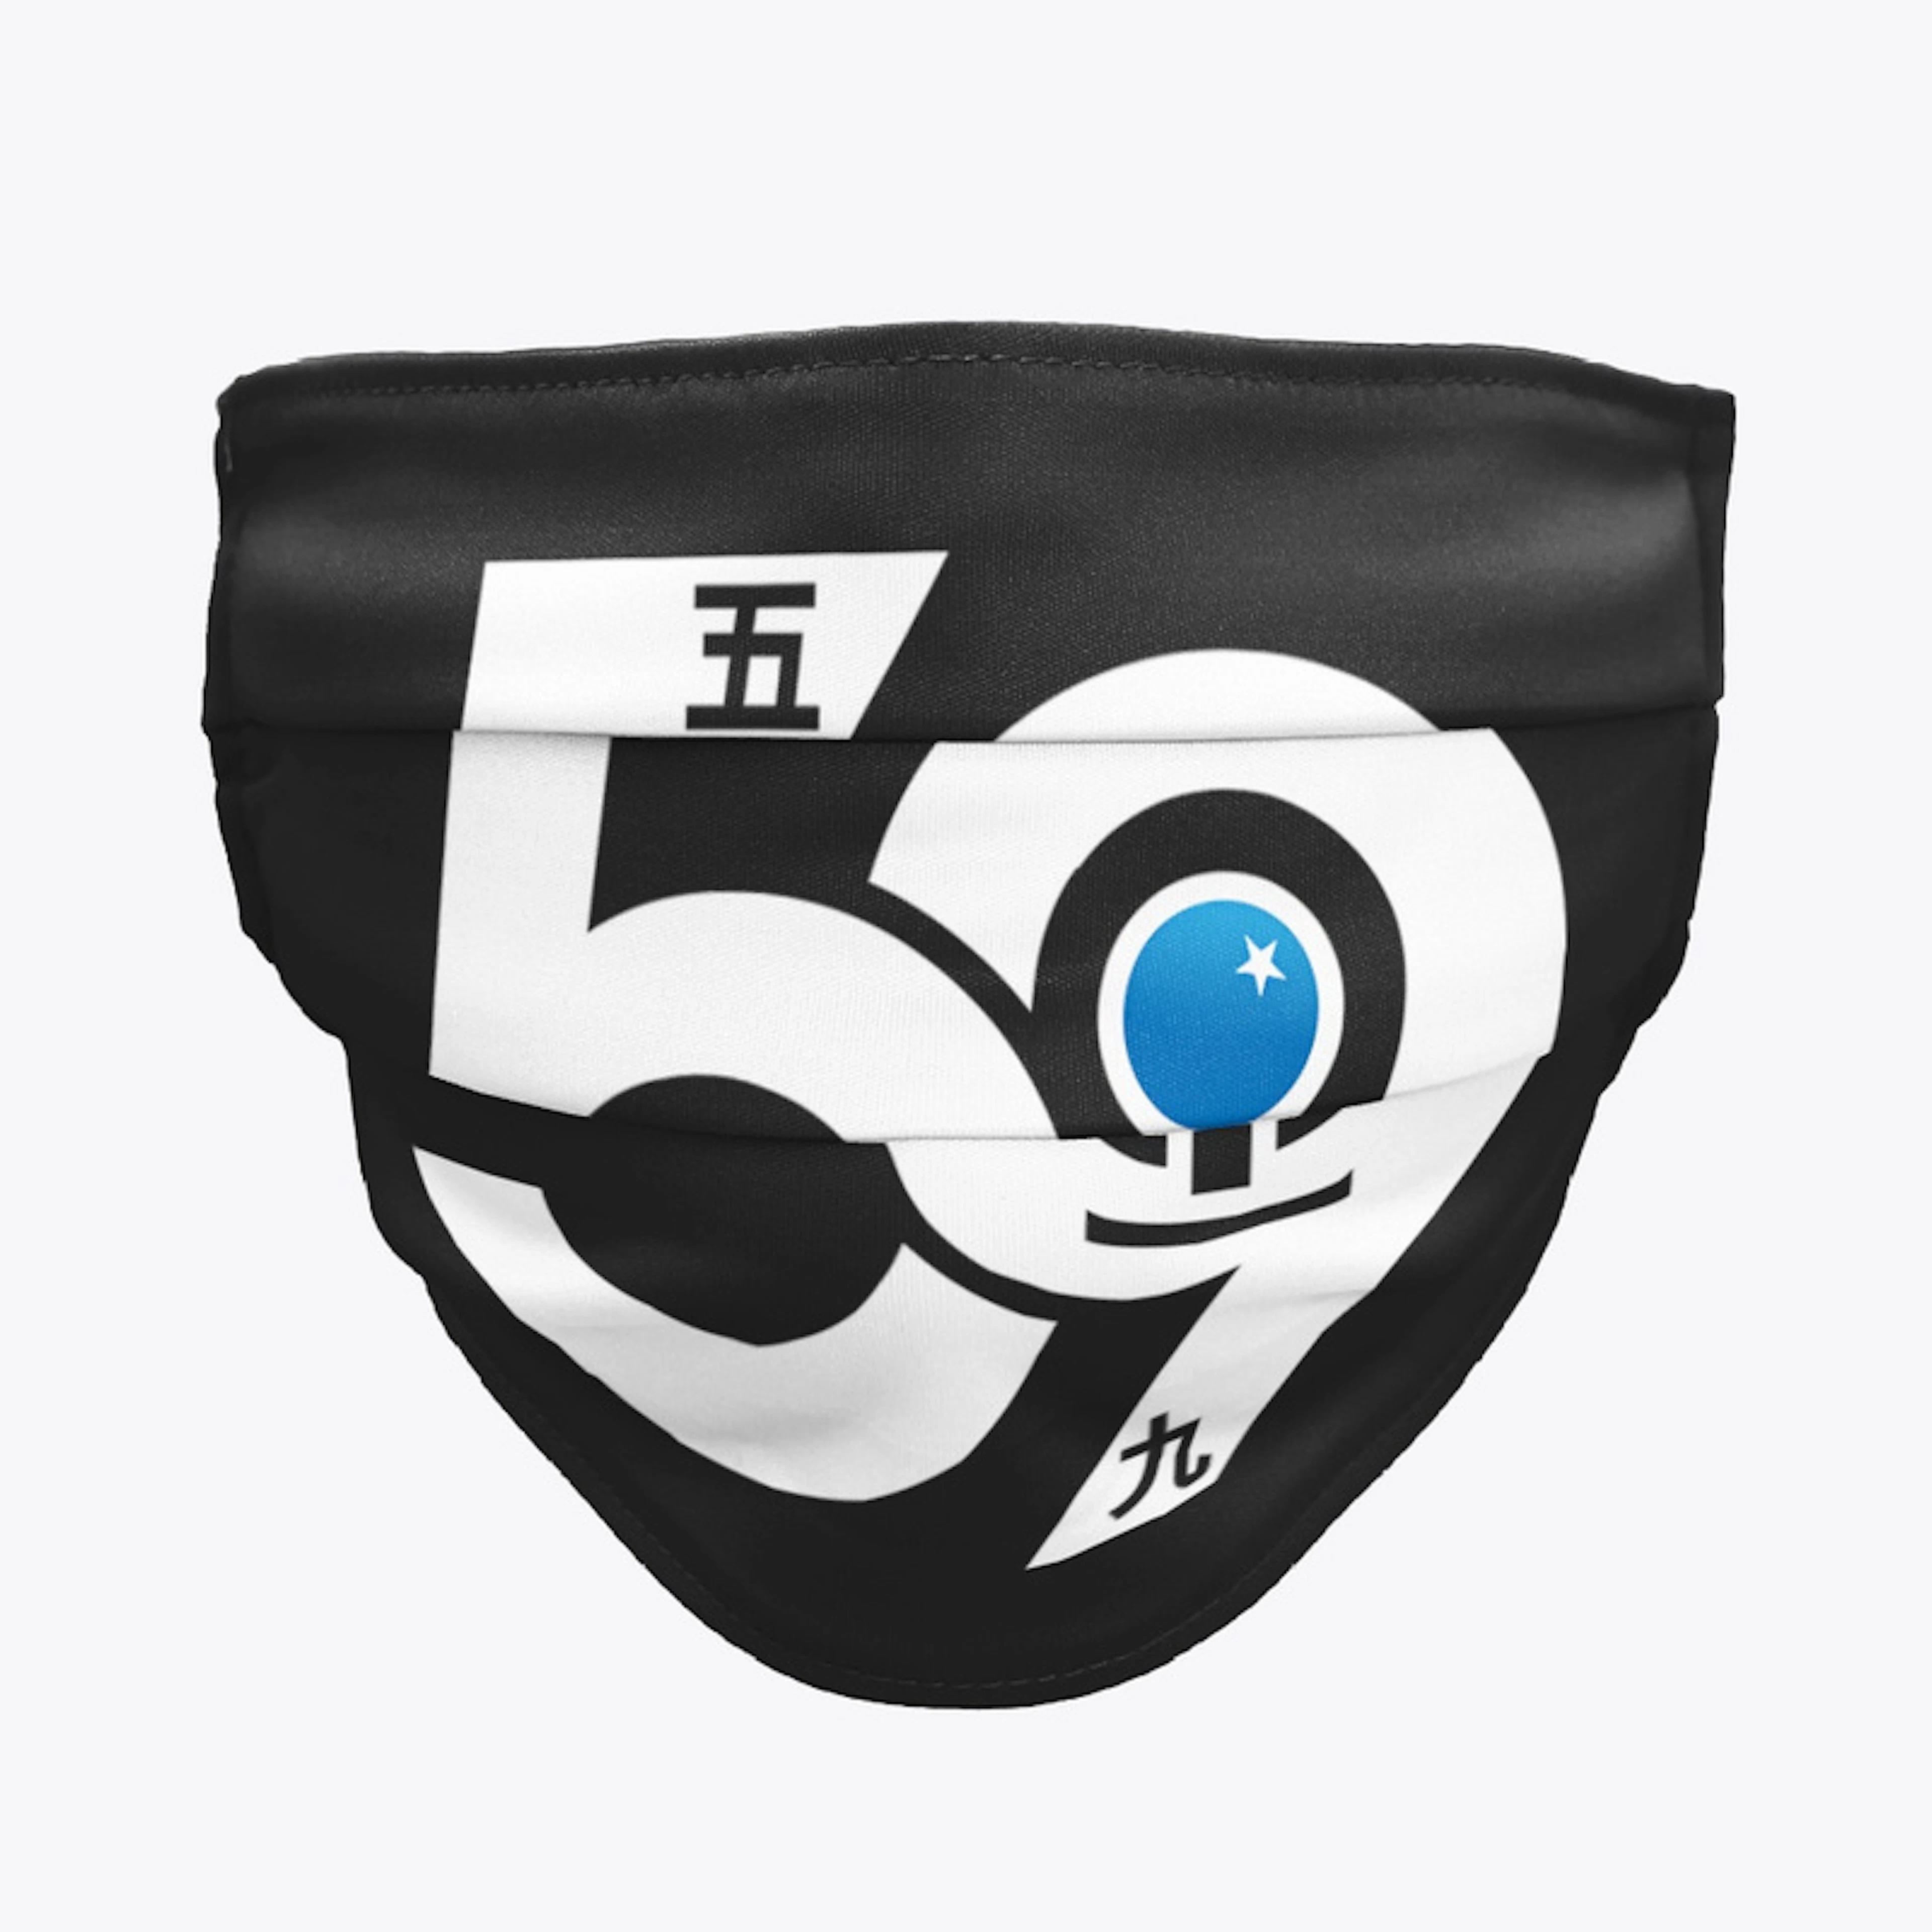 59 Gaming Logo Design